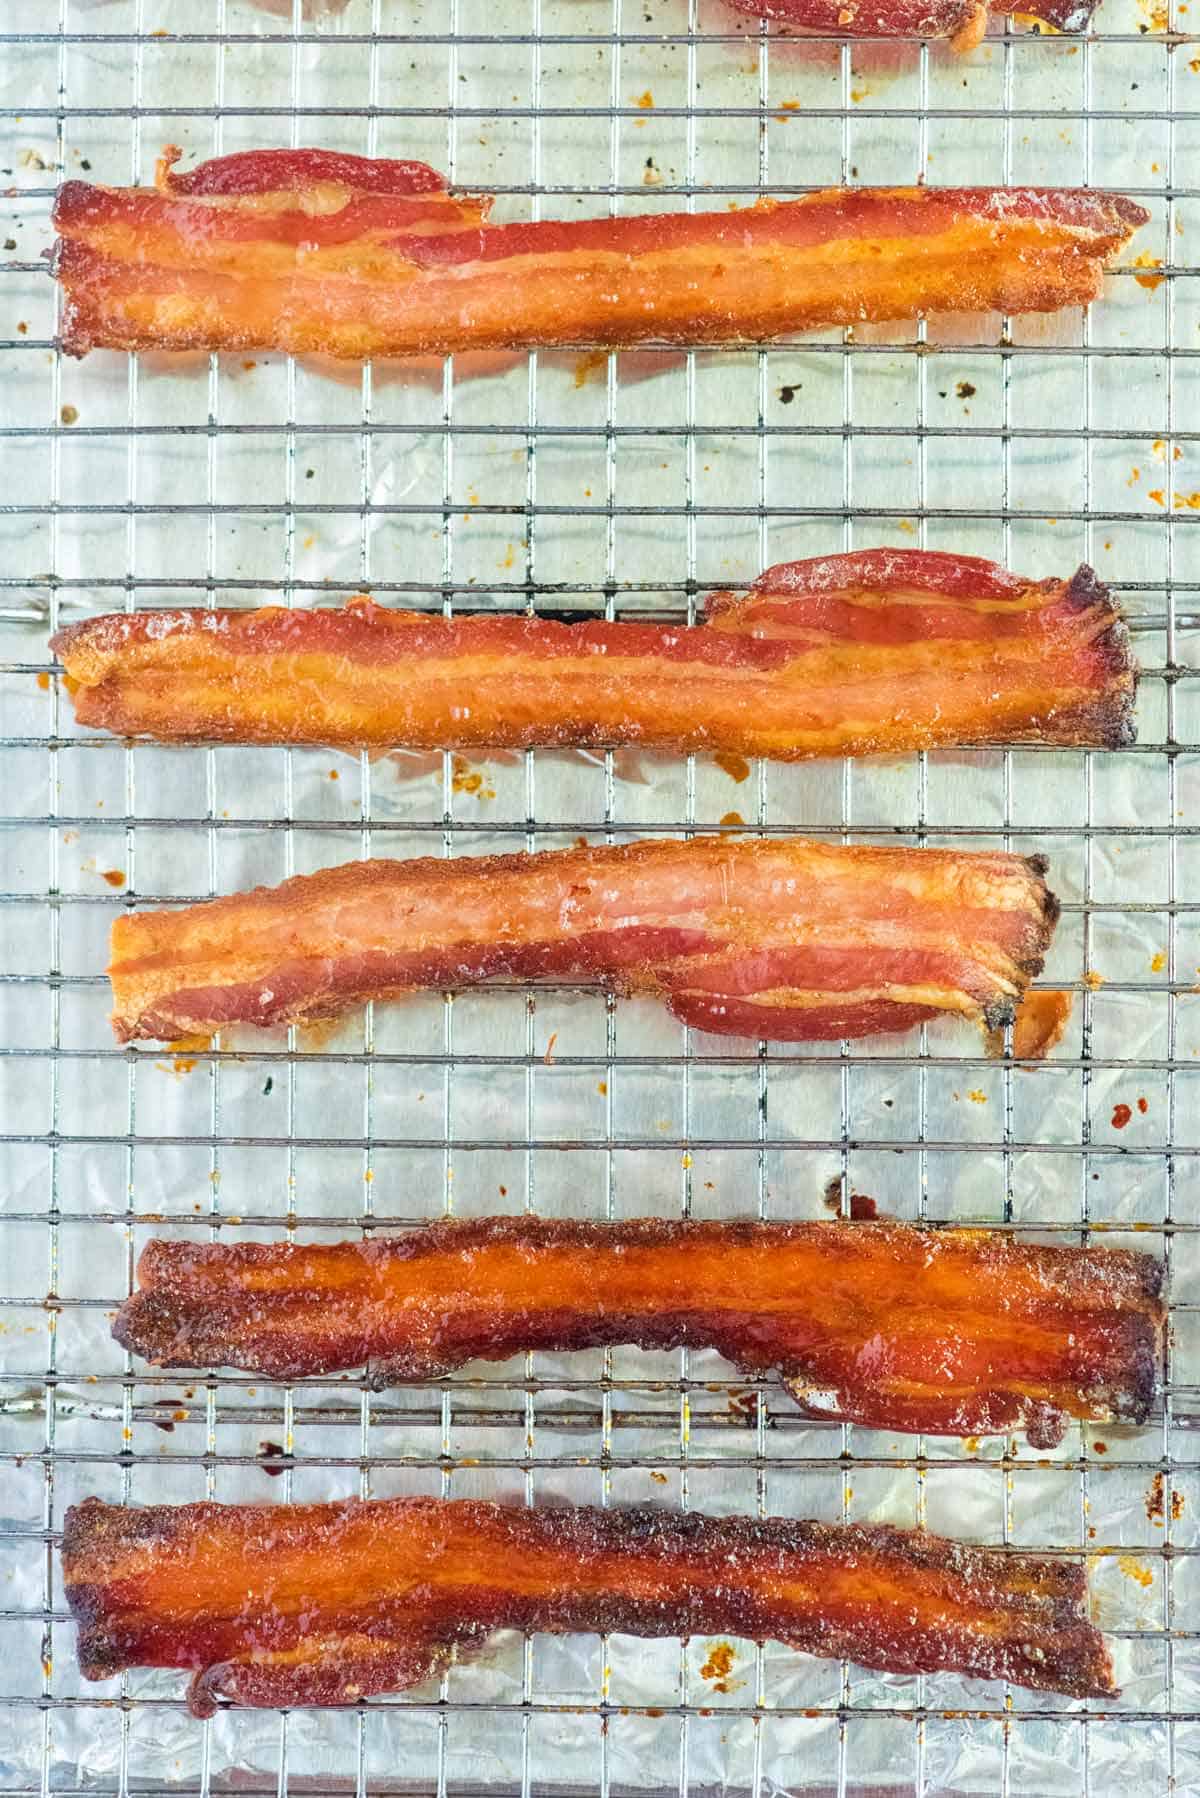 https://www.inspiredtaste.net/wp-content/uploads/2017/01/How-to-Bake-Pepper-Honey-Sriracha-and-Maple-Bacon-1200.jpg